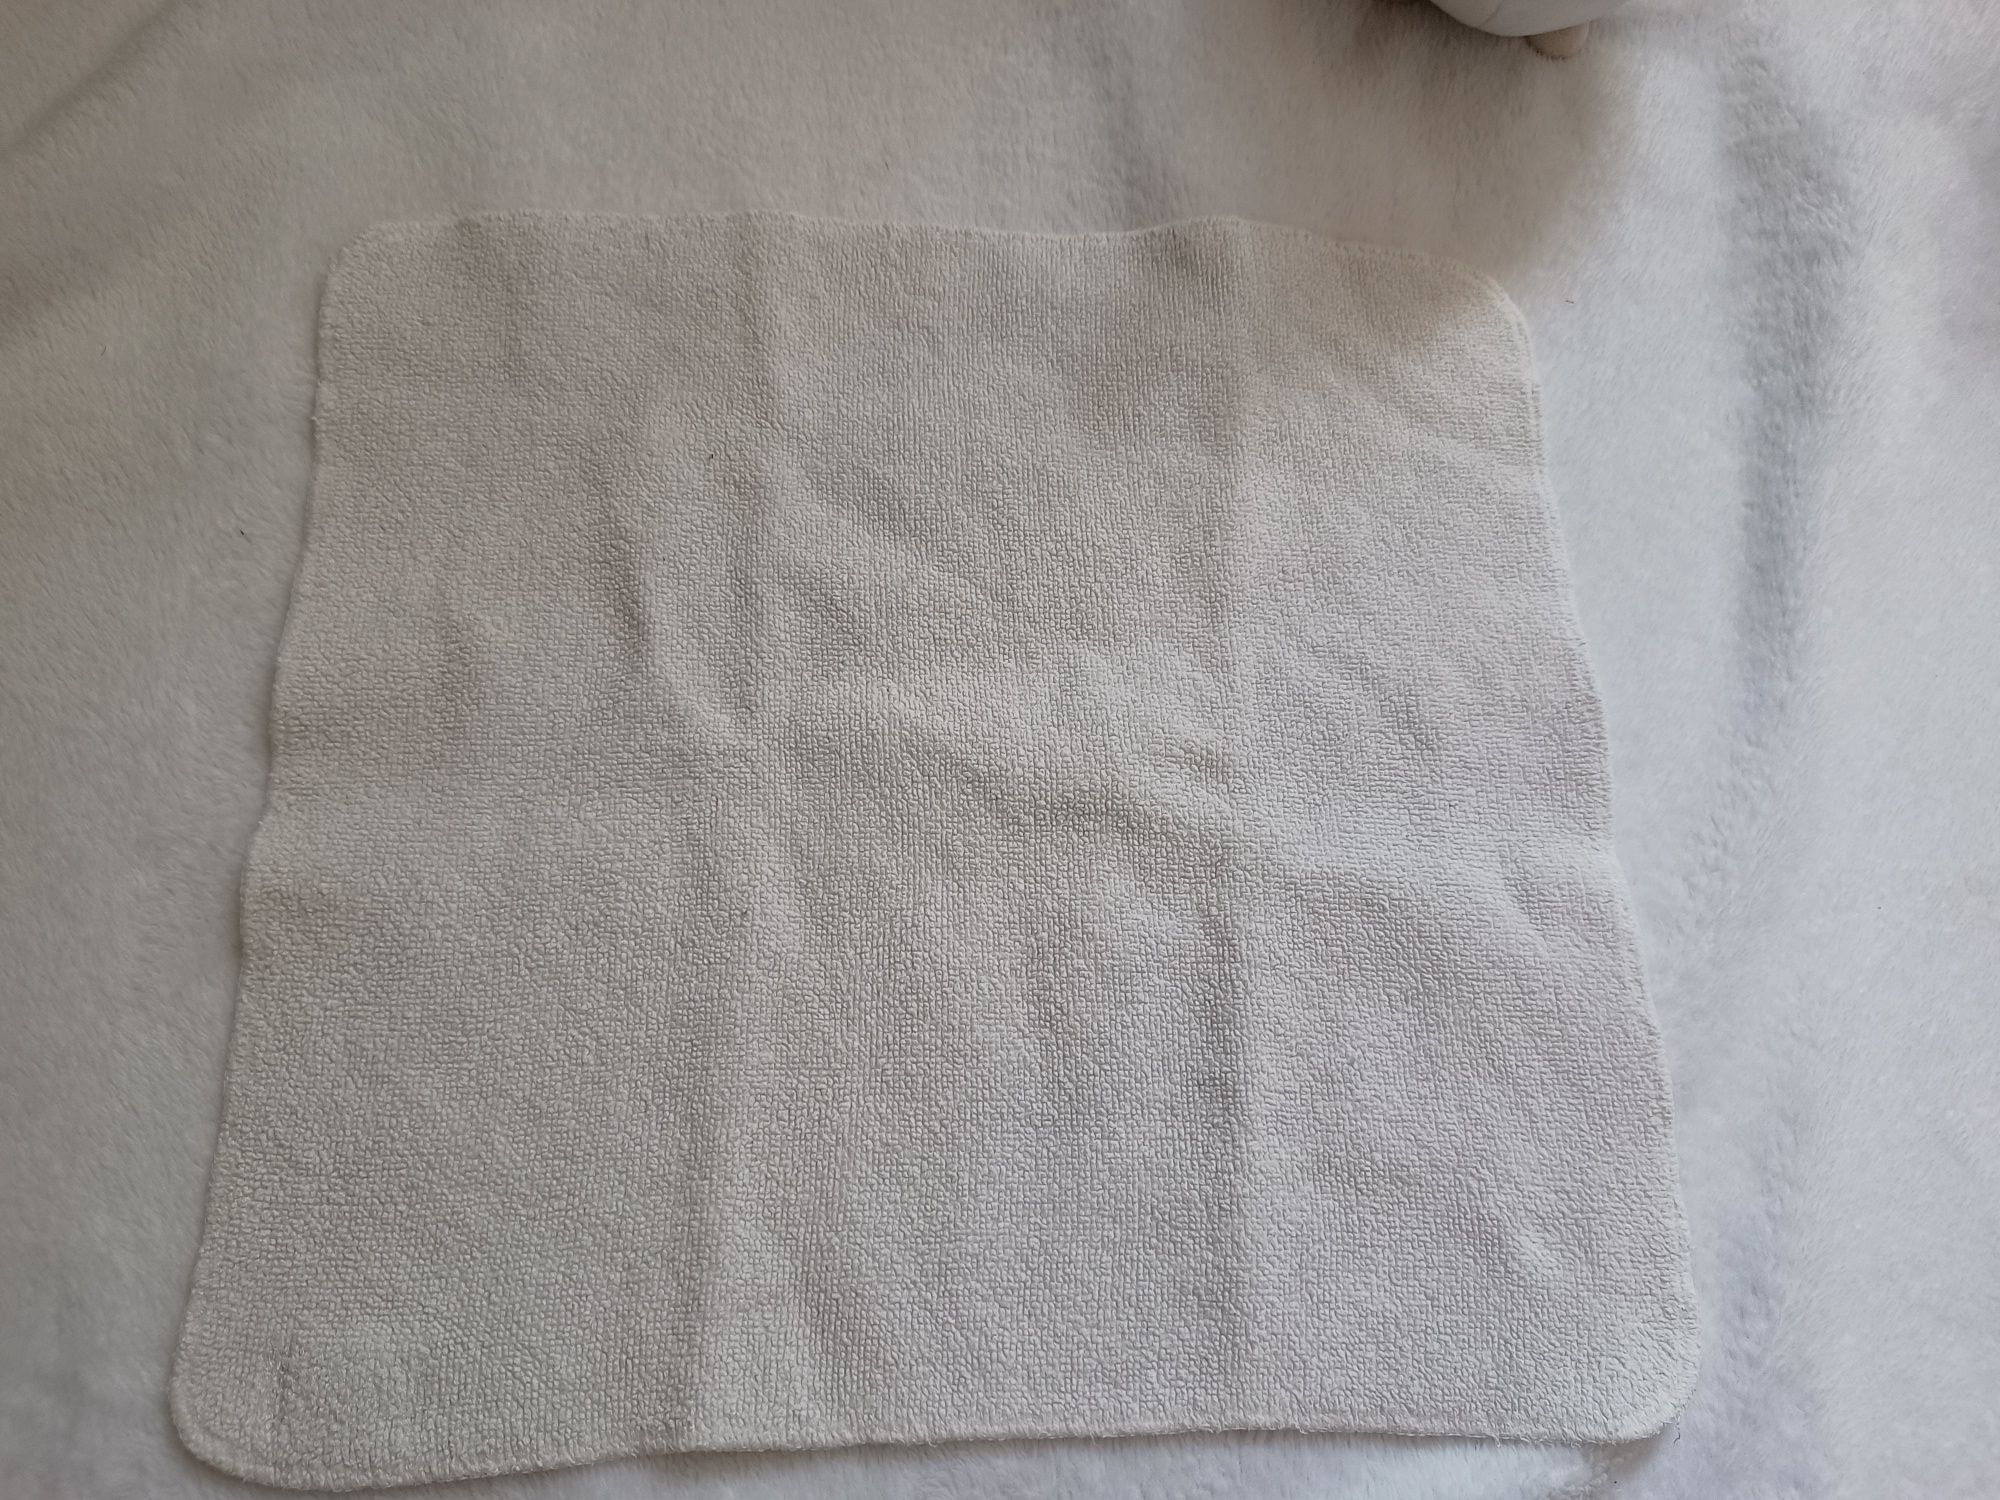 Wkład ręcznikowy Pupulki pielucha wielorazowa